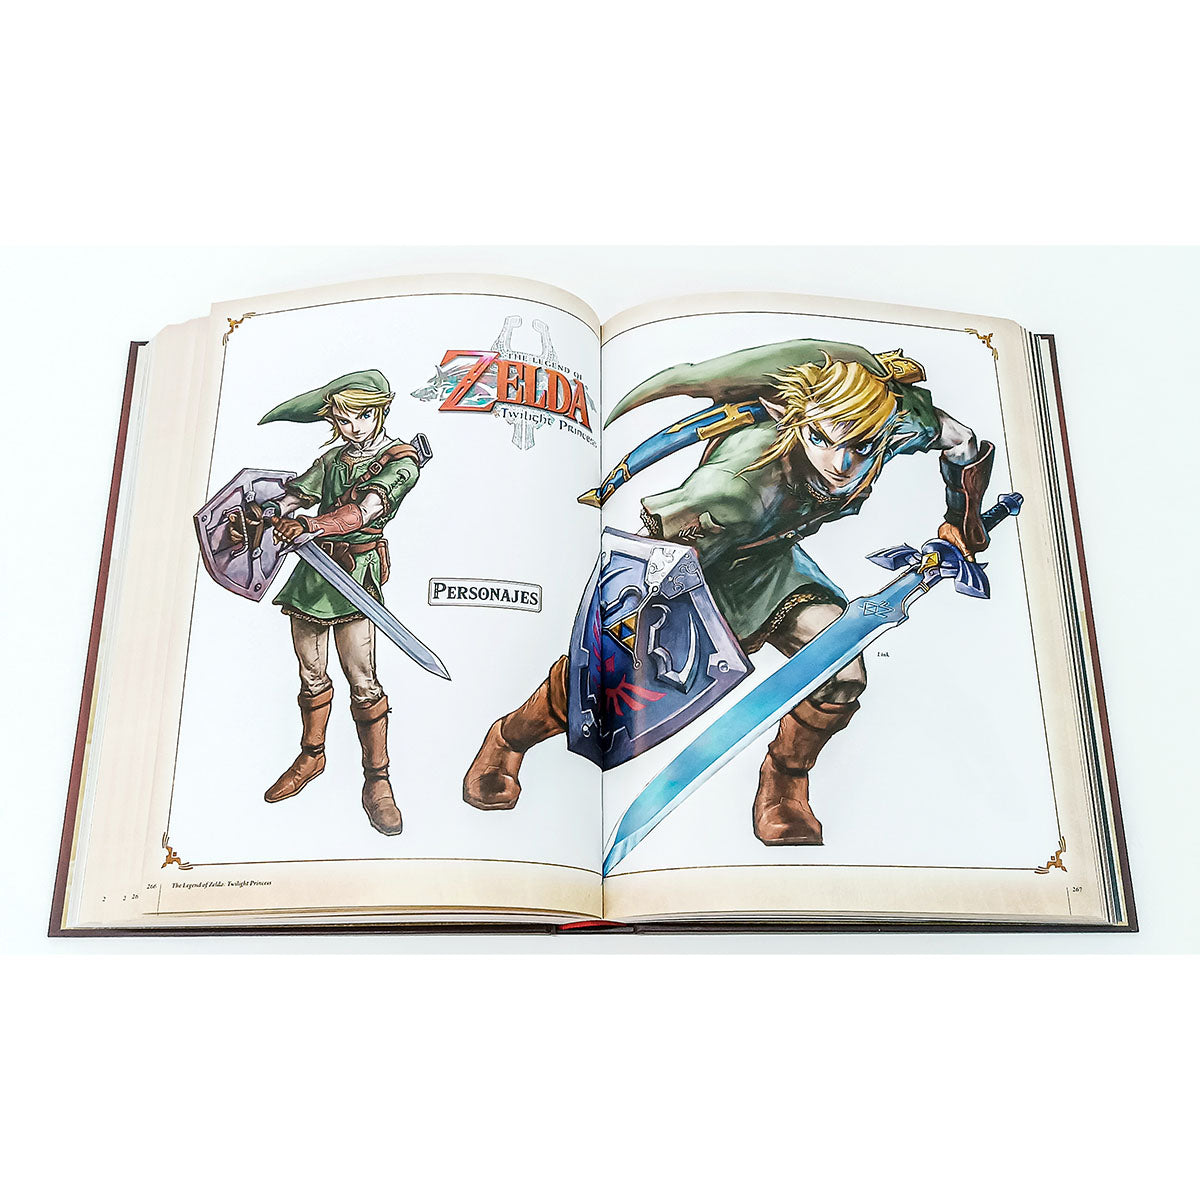 The Legend of Zelda: Arte y Artefactos